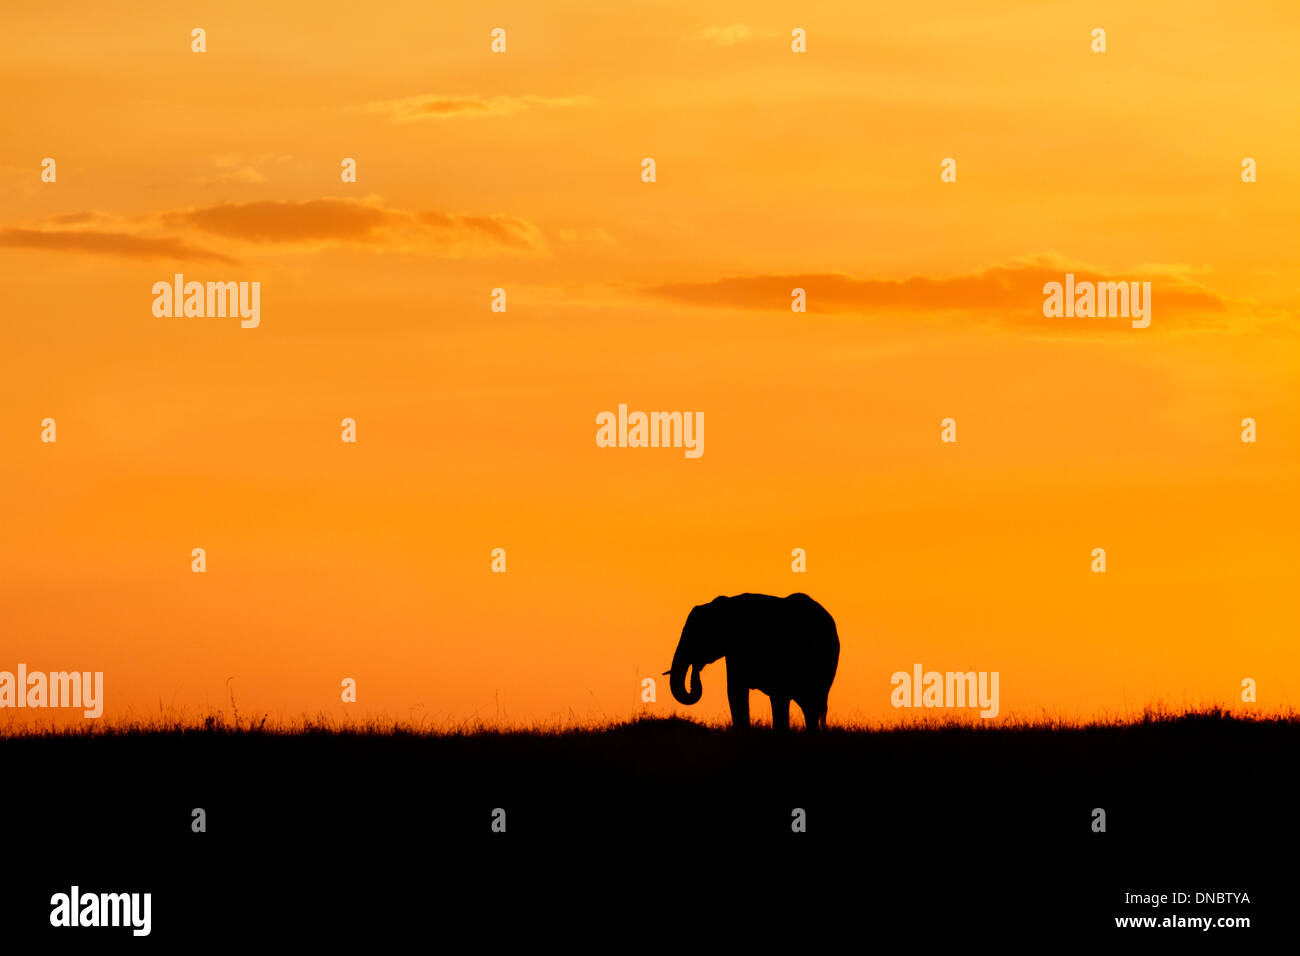 Silhouette d'éléphant contre un ciel orange au Kenya Banque D'Images